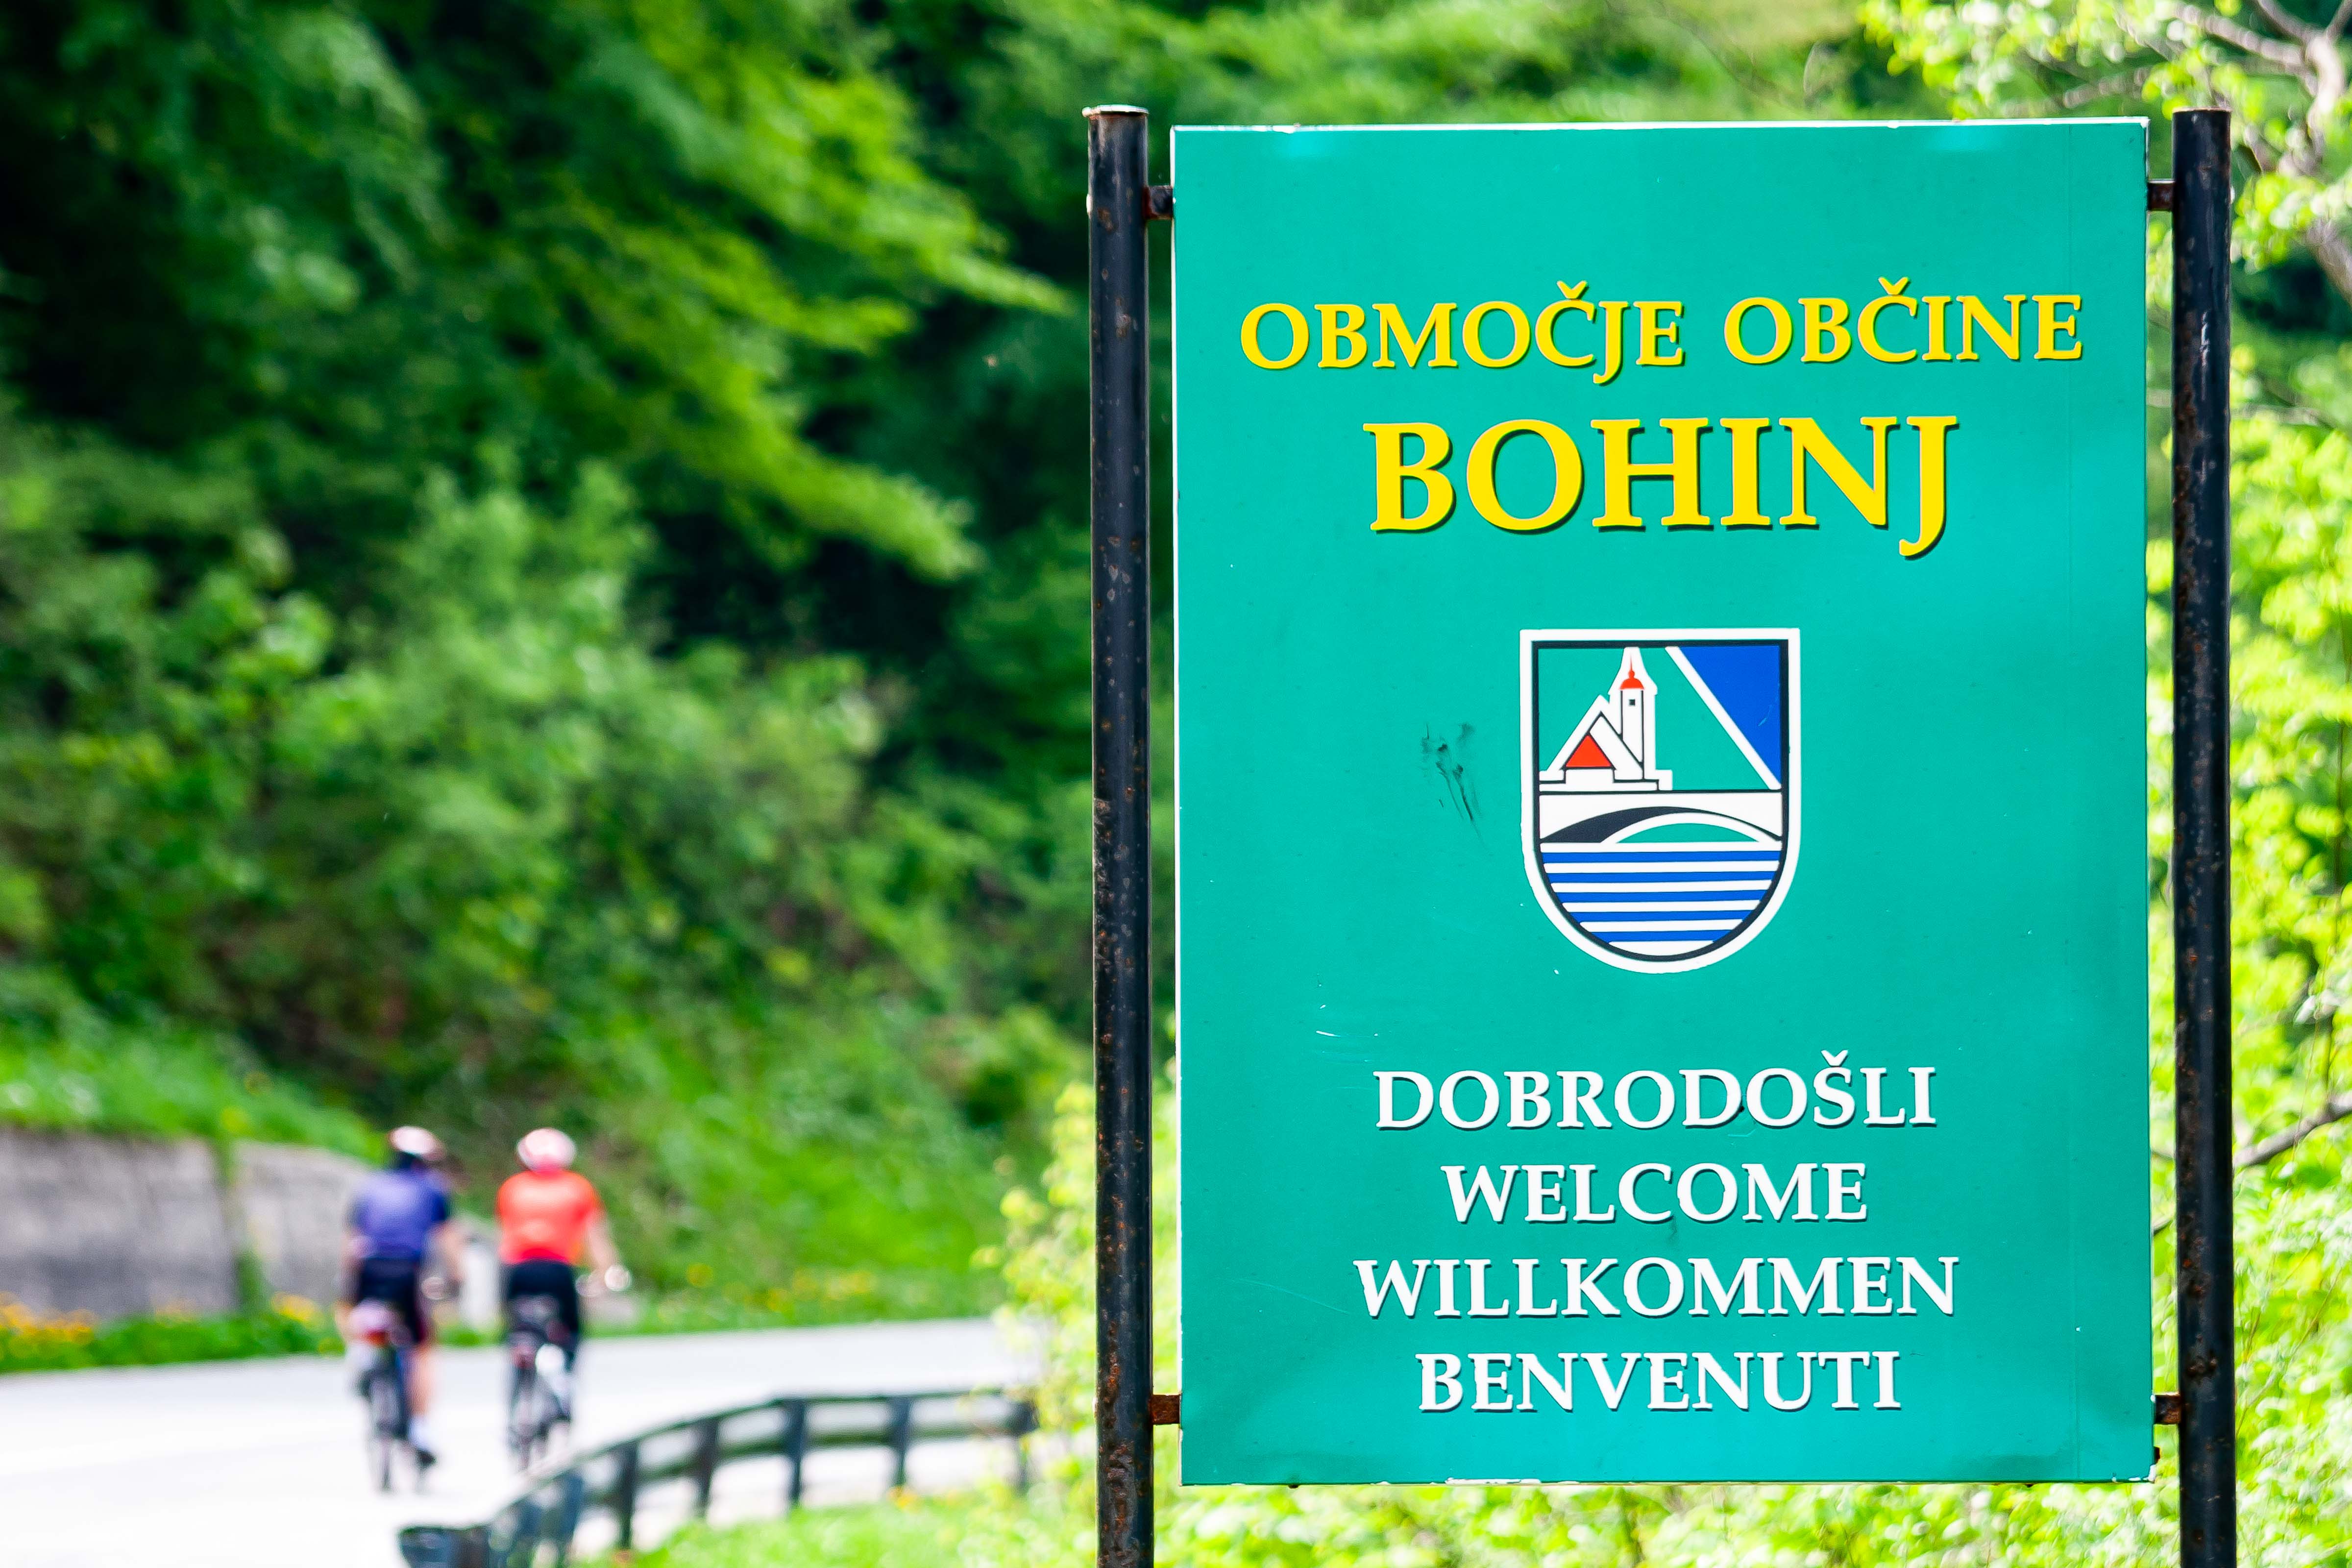 Slovenia, Bohinj Prov, Dobrodosli Obcina Bohinj, 2006, IMG 6430